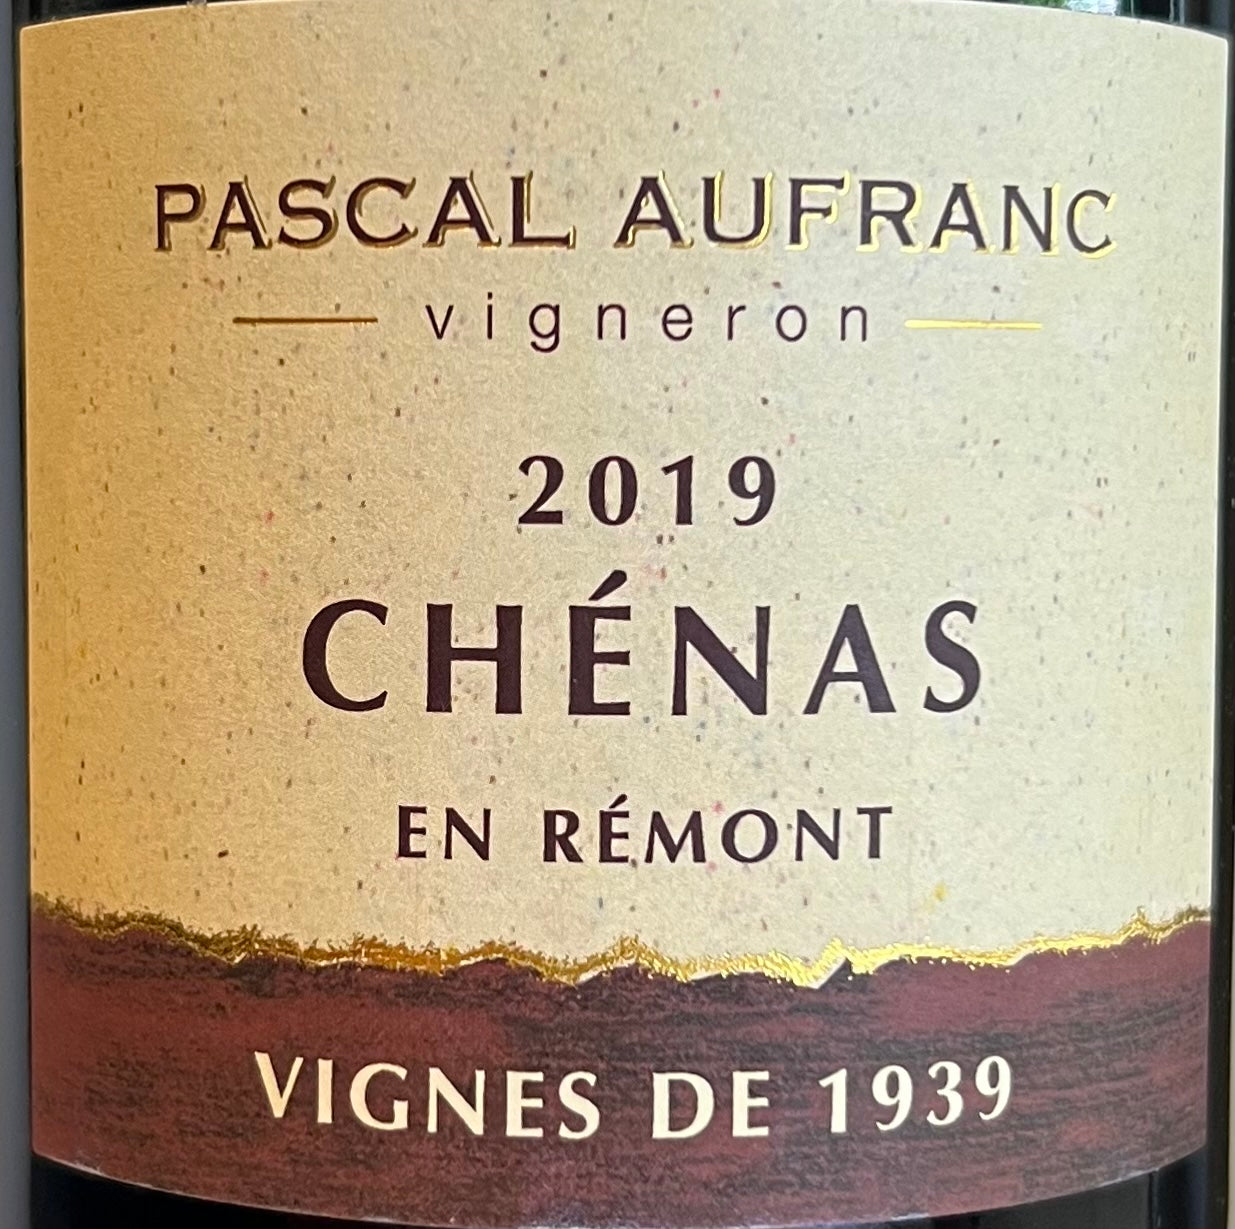 Pascal Aufranc 'Vignes de 1939' - Chenas - Beaujolais